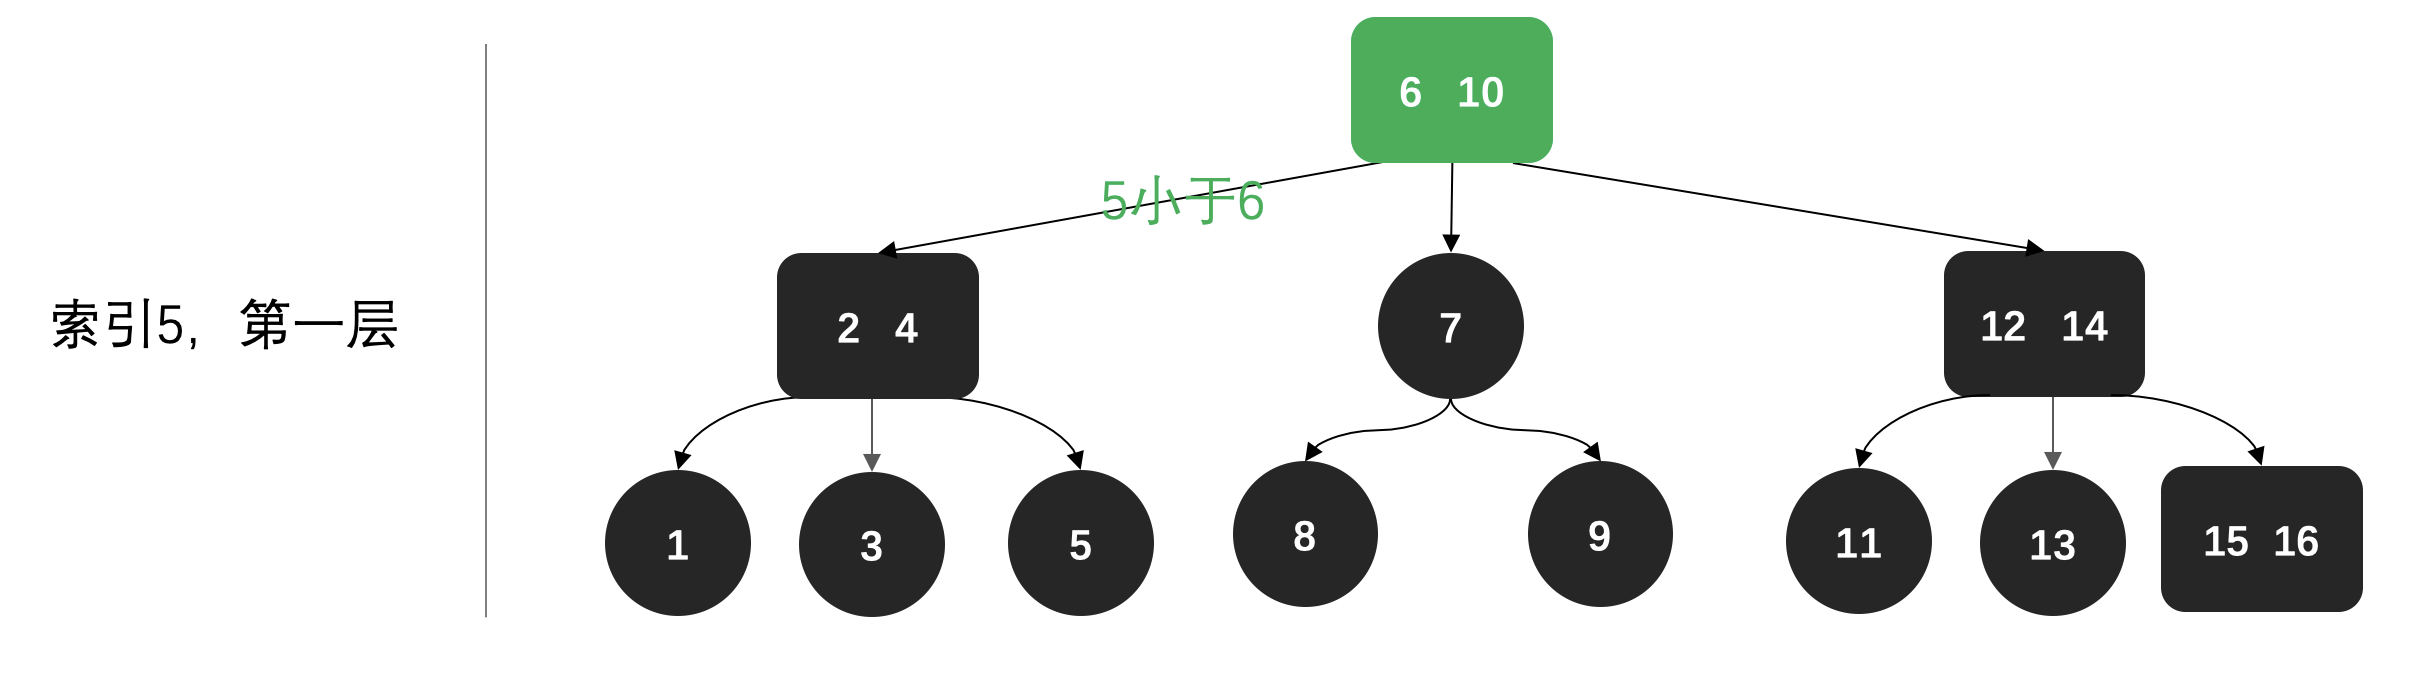 2-3平衡树 (红黑树的前身) - 图11